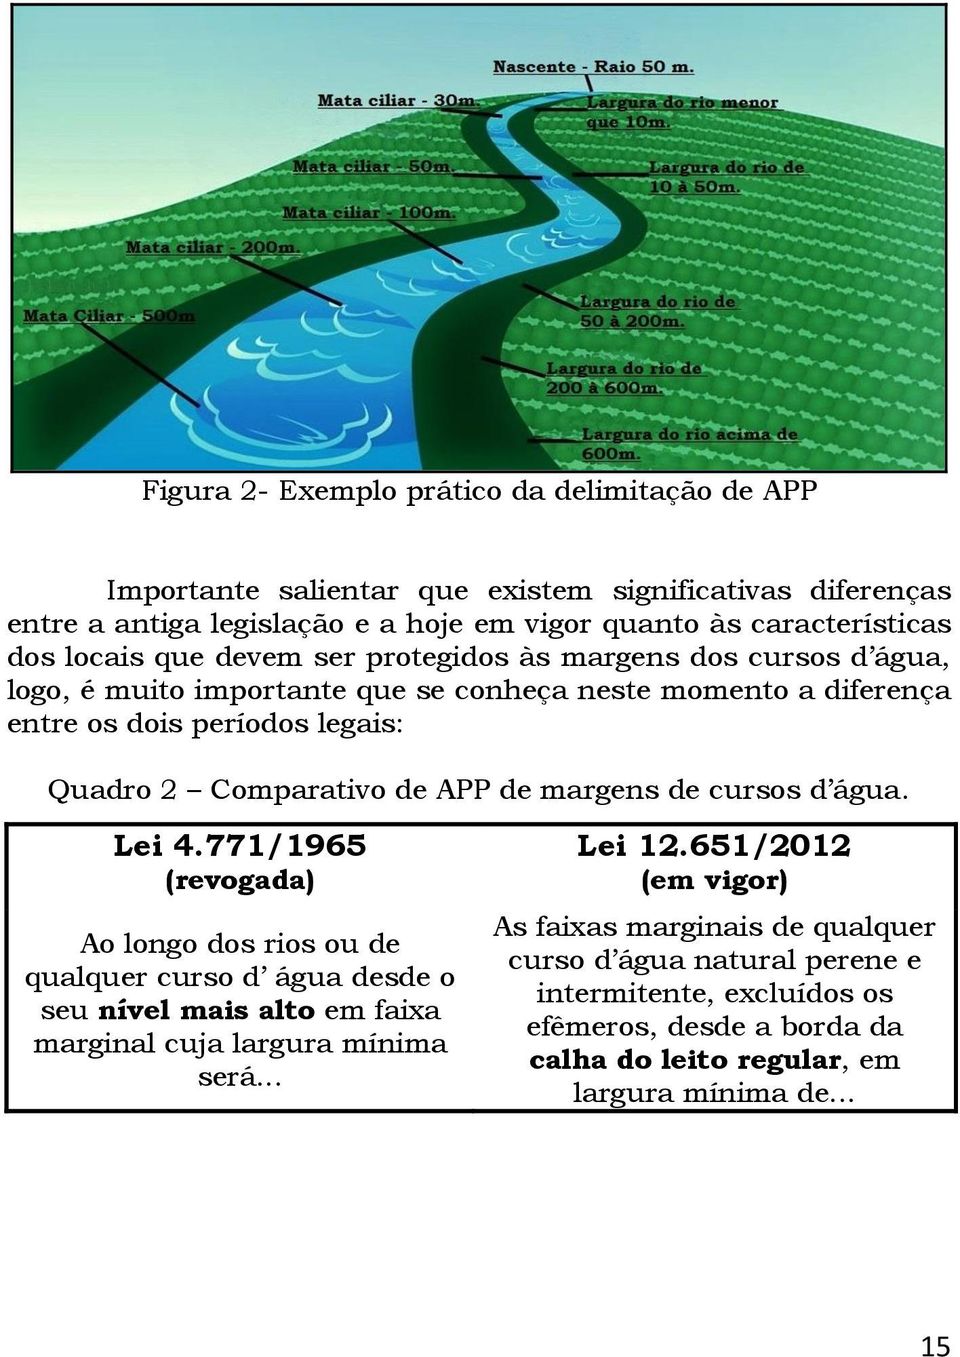 APP de margens de cursos d água. Lei 4.771/1965 (revogada) Ao longo dos rios ou de qualquer curso d água desde o seu nível mais alto em faixa marginal cuja largura mínima será... Lei 12.